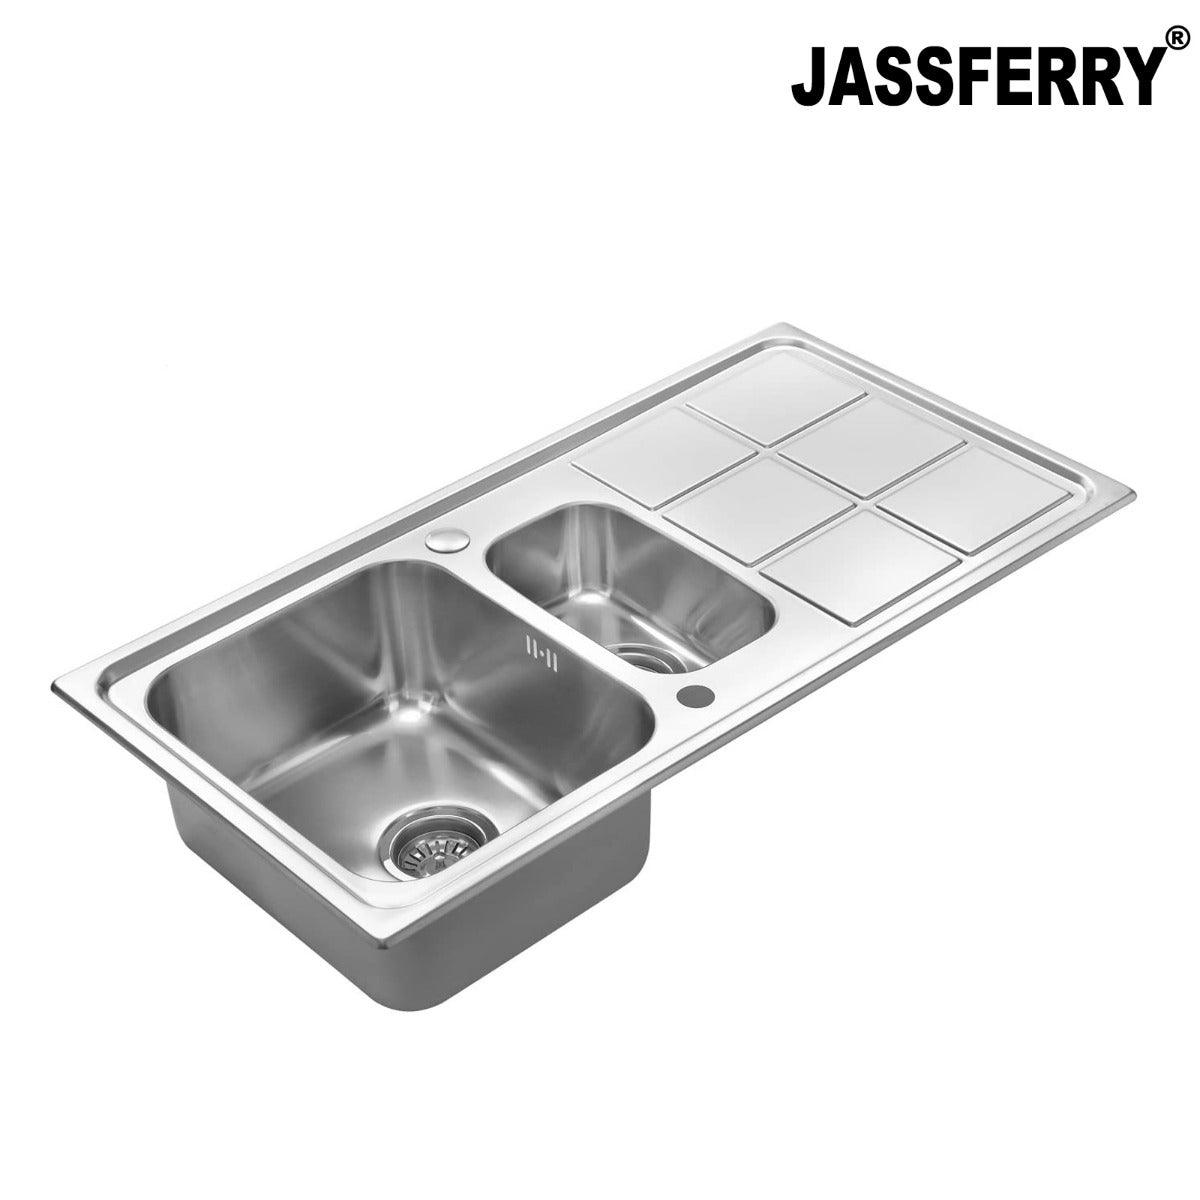 JassferryJASSFERRY Stainless Steel Kitchen Sink 1.5 Bowl Rectangle Reversible DrainerKitchen Sink